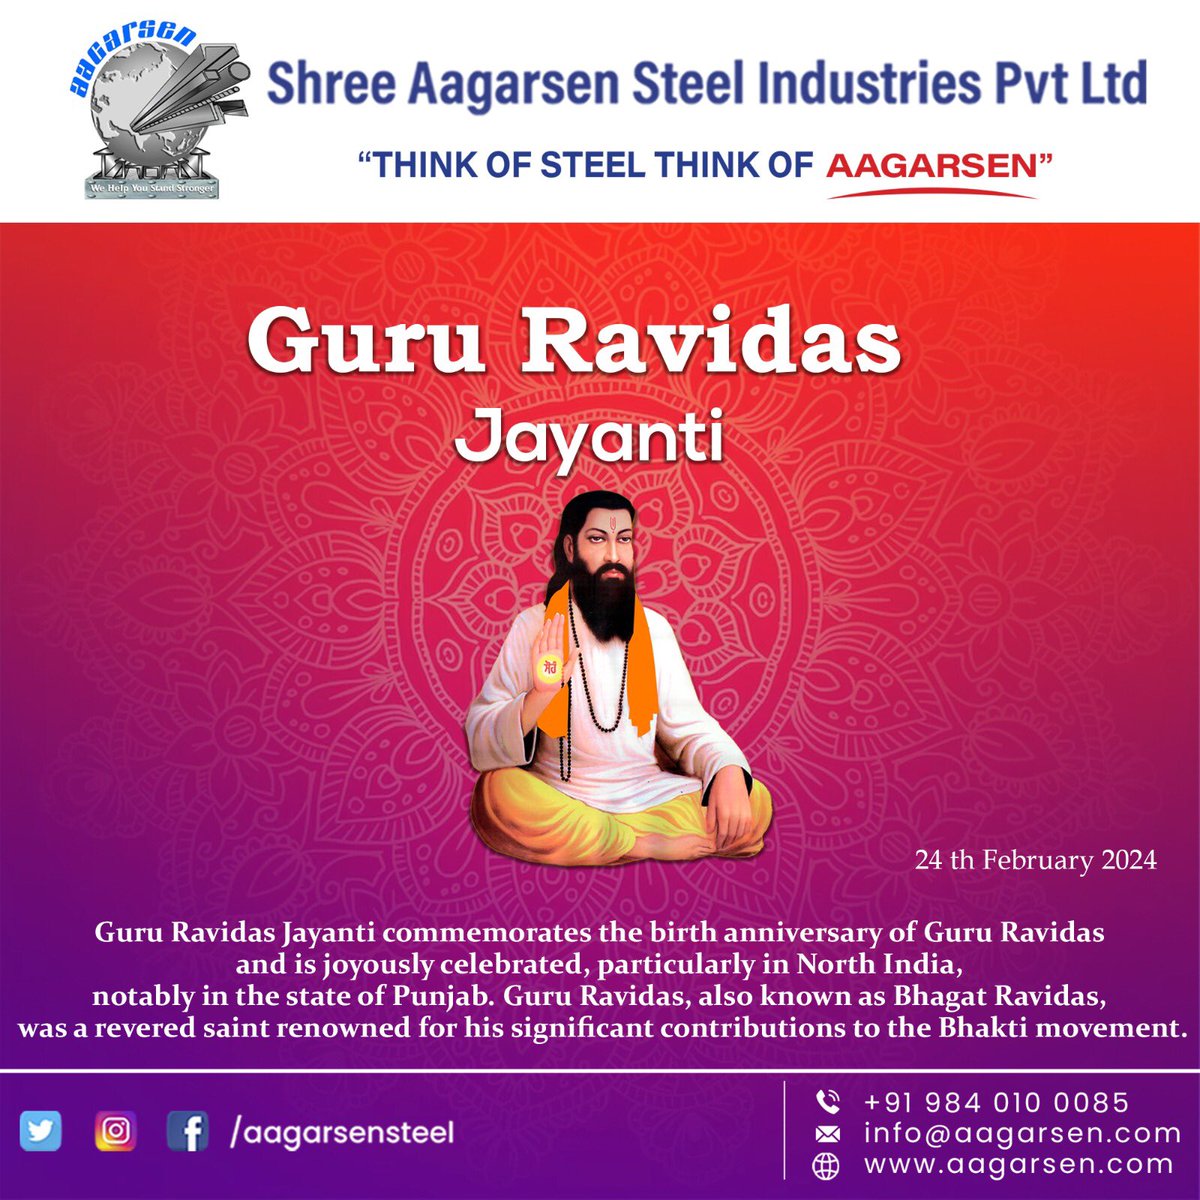 'Happy Guru Ravidas Jayanti!'
.
THINK OF STEEL, THINK OF AAGARSEN!!!
.
To Order @98401 00085
Discover more:
buff.ly/3tF7P5W
.
#steel #steelindustry #trend #steelworks #steelbook #GuruRavidasJayanti
#RavidasJayanti #GuruRavidas #JayantiWishes #GuruRavidasTeachings